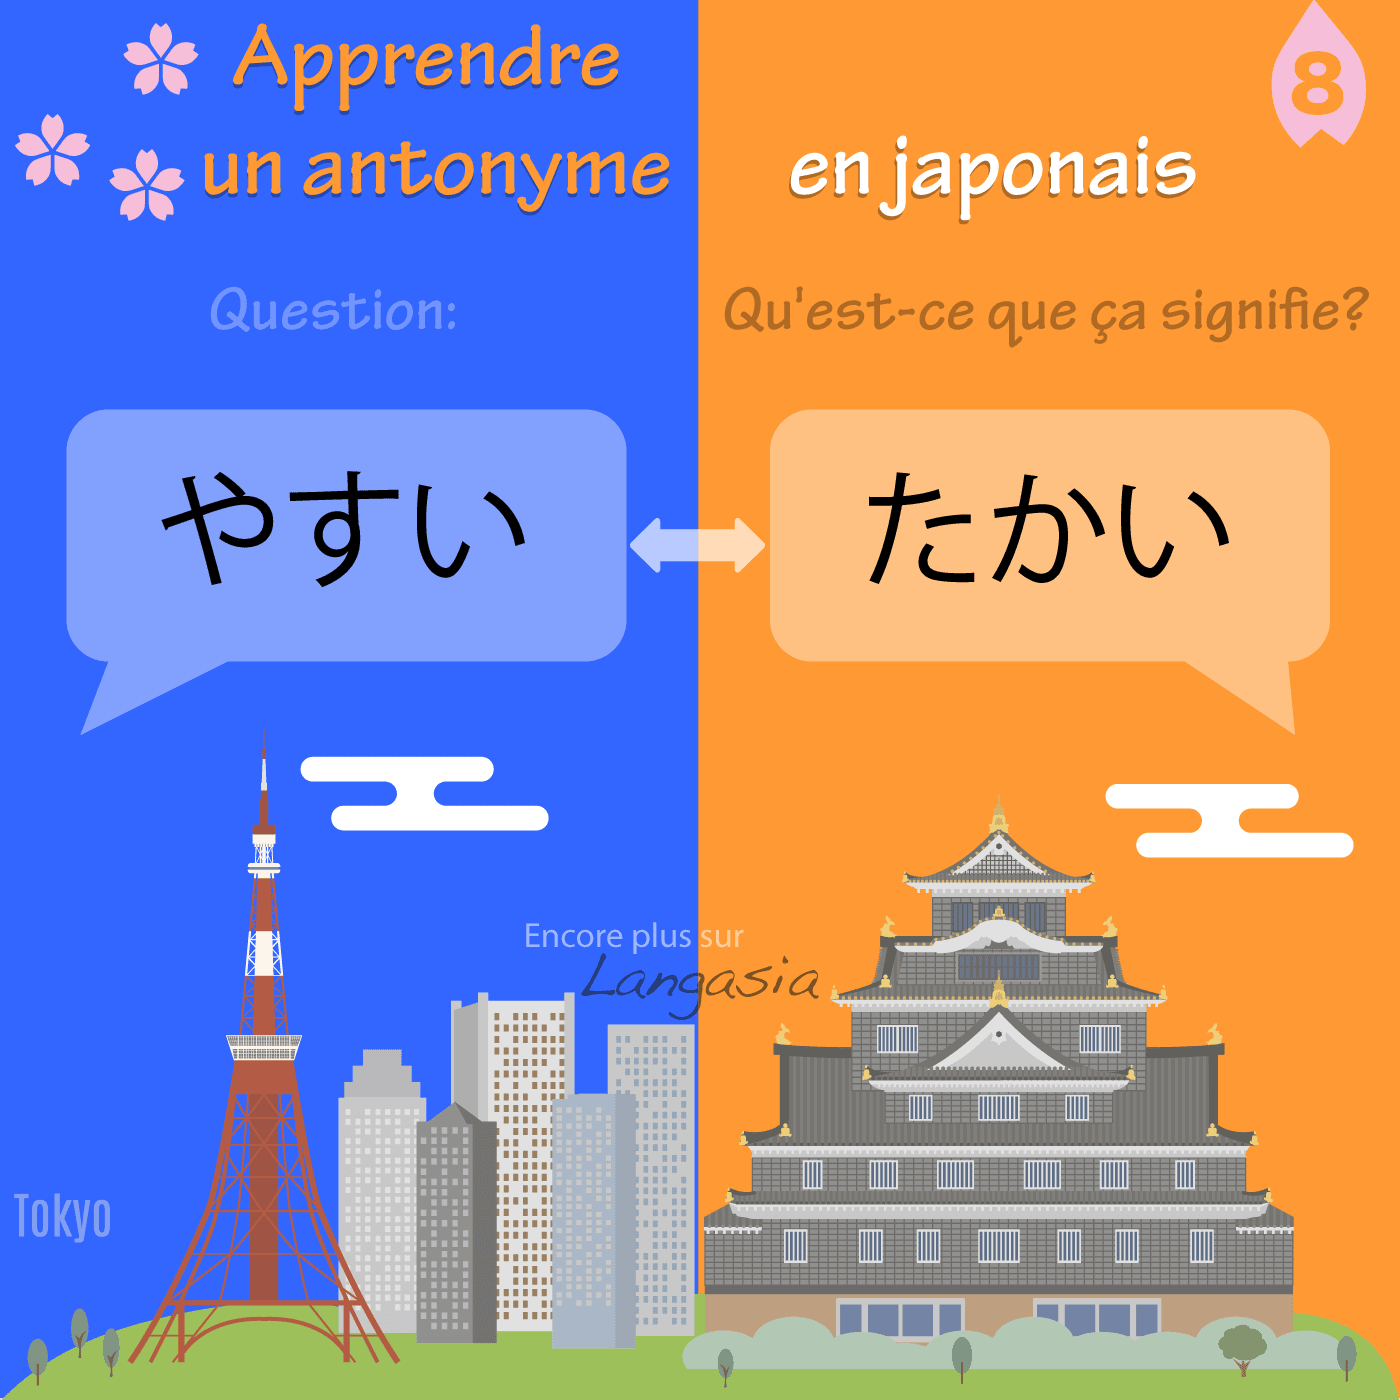 Antonyme en japonais – やすい bon marché VS たかい cher